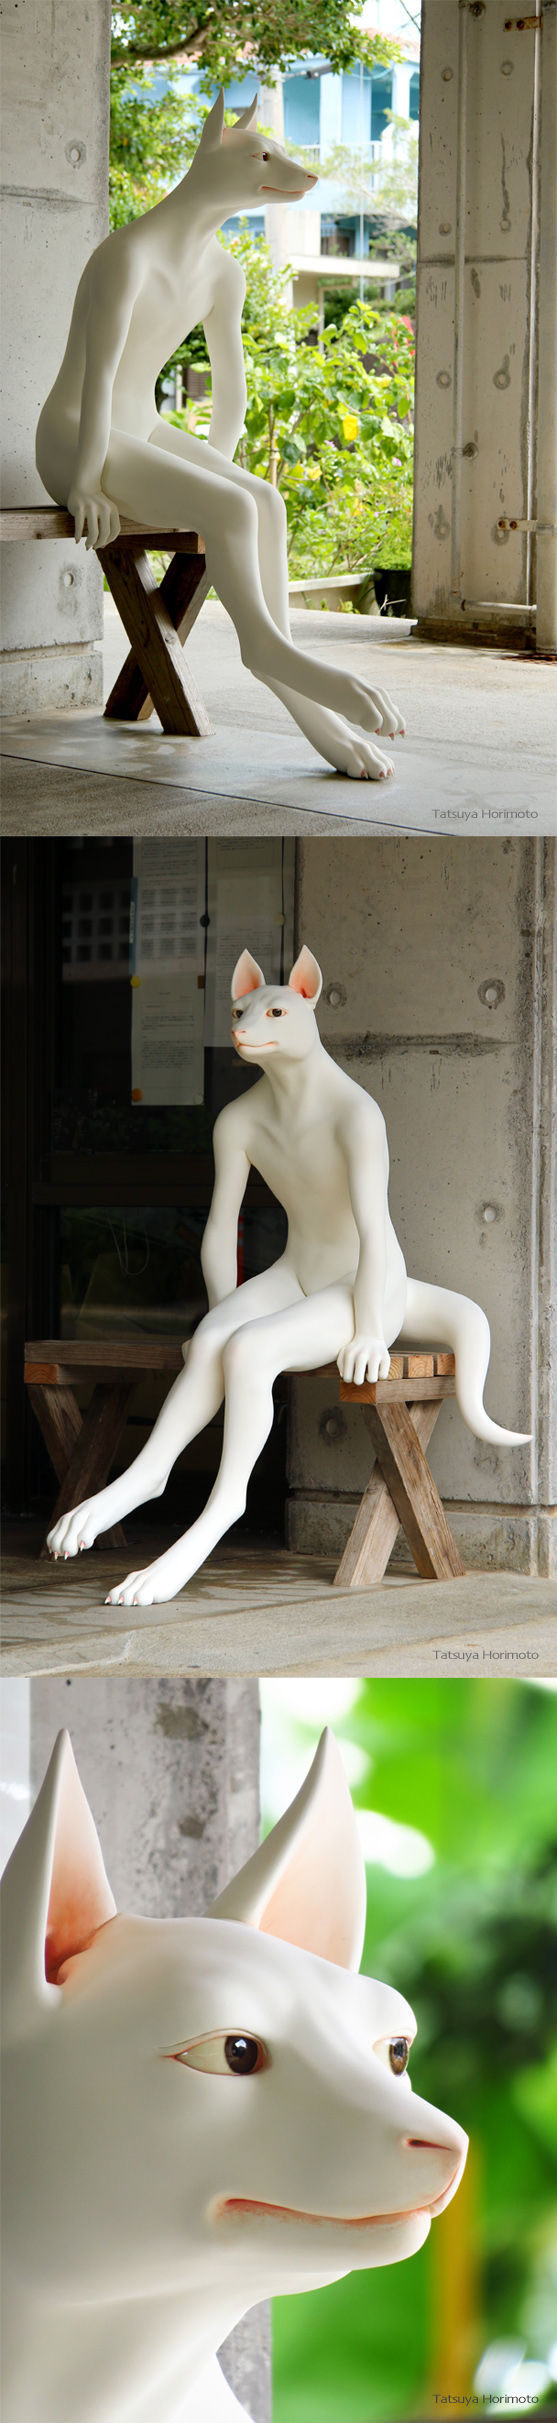 Ychan - r - furry sex dolls - 147719